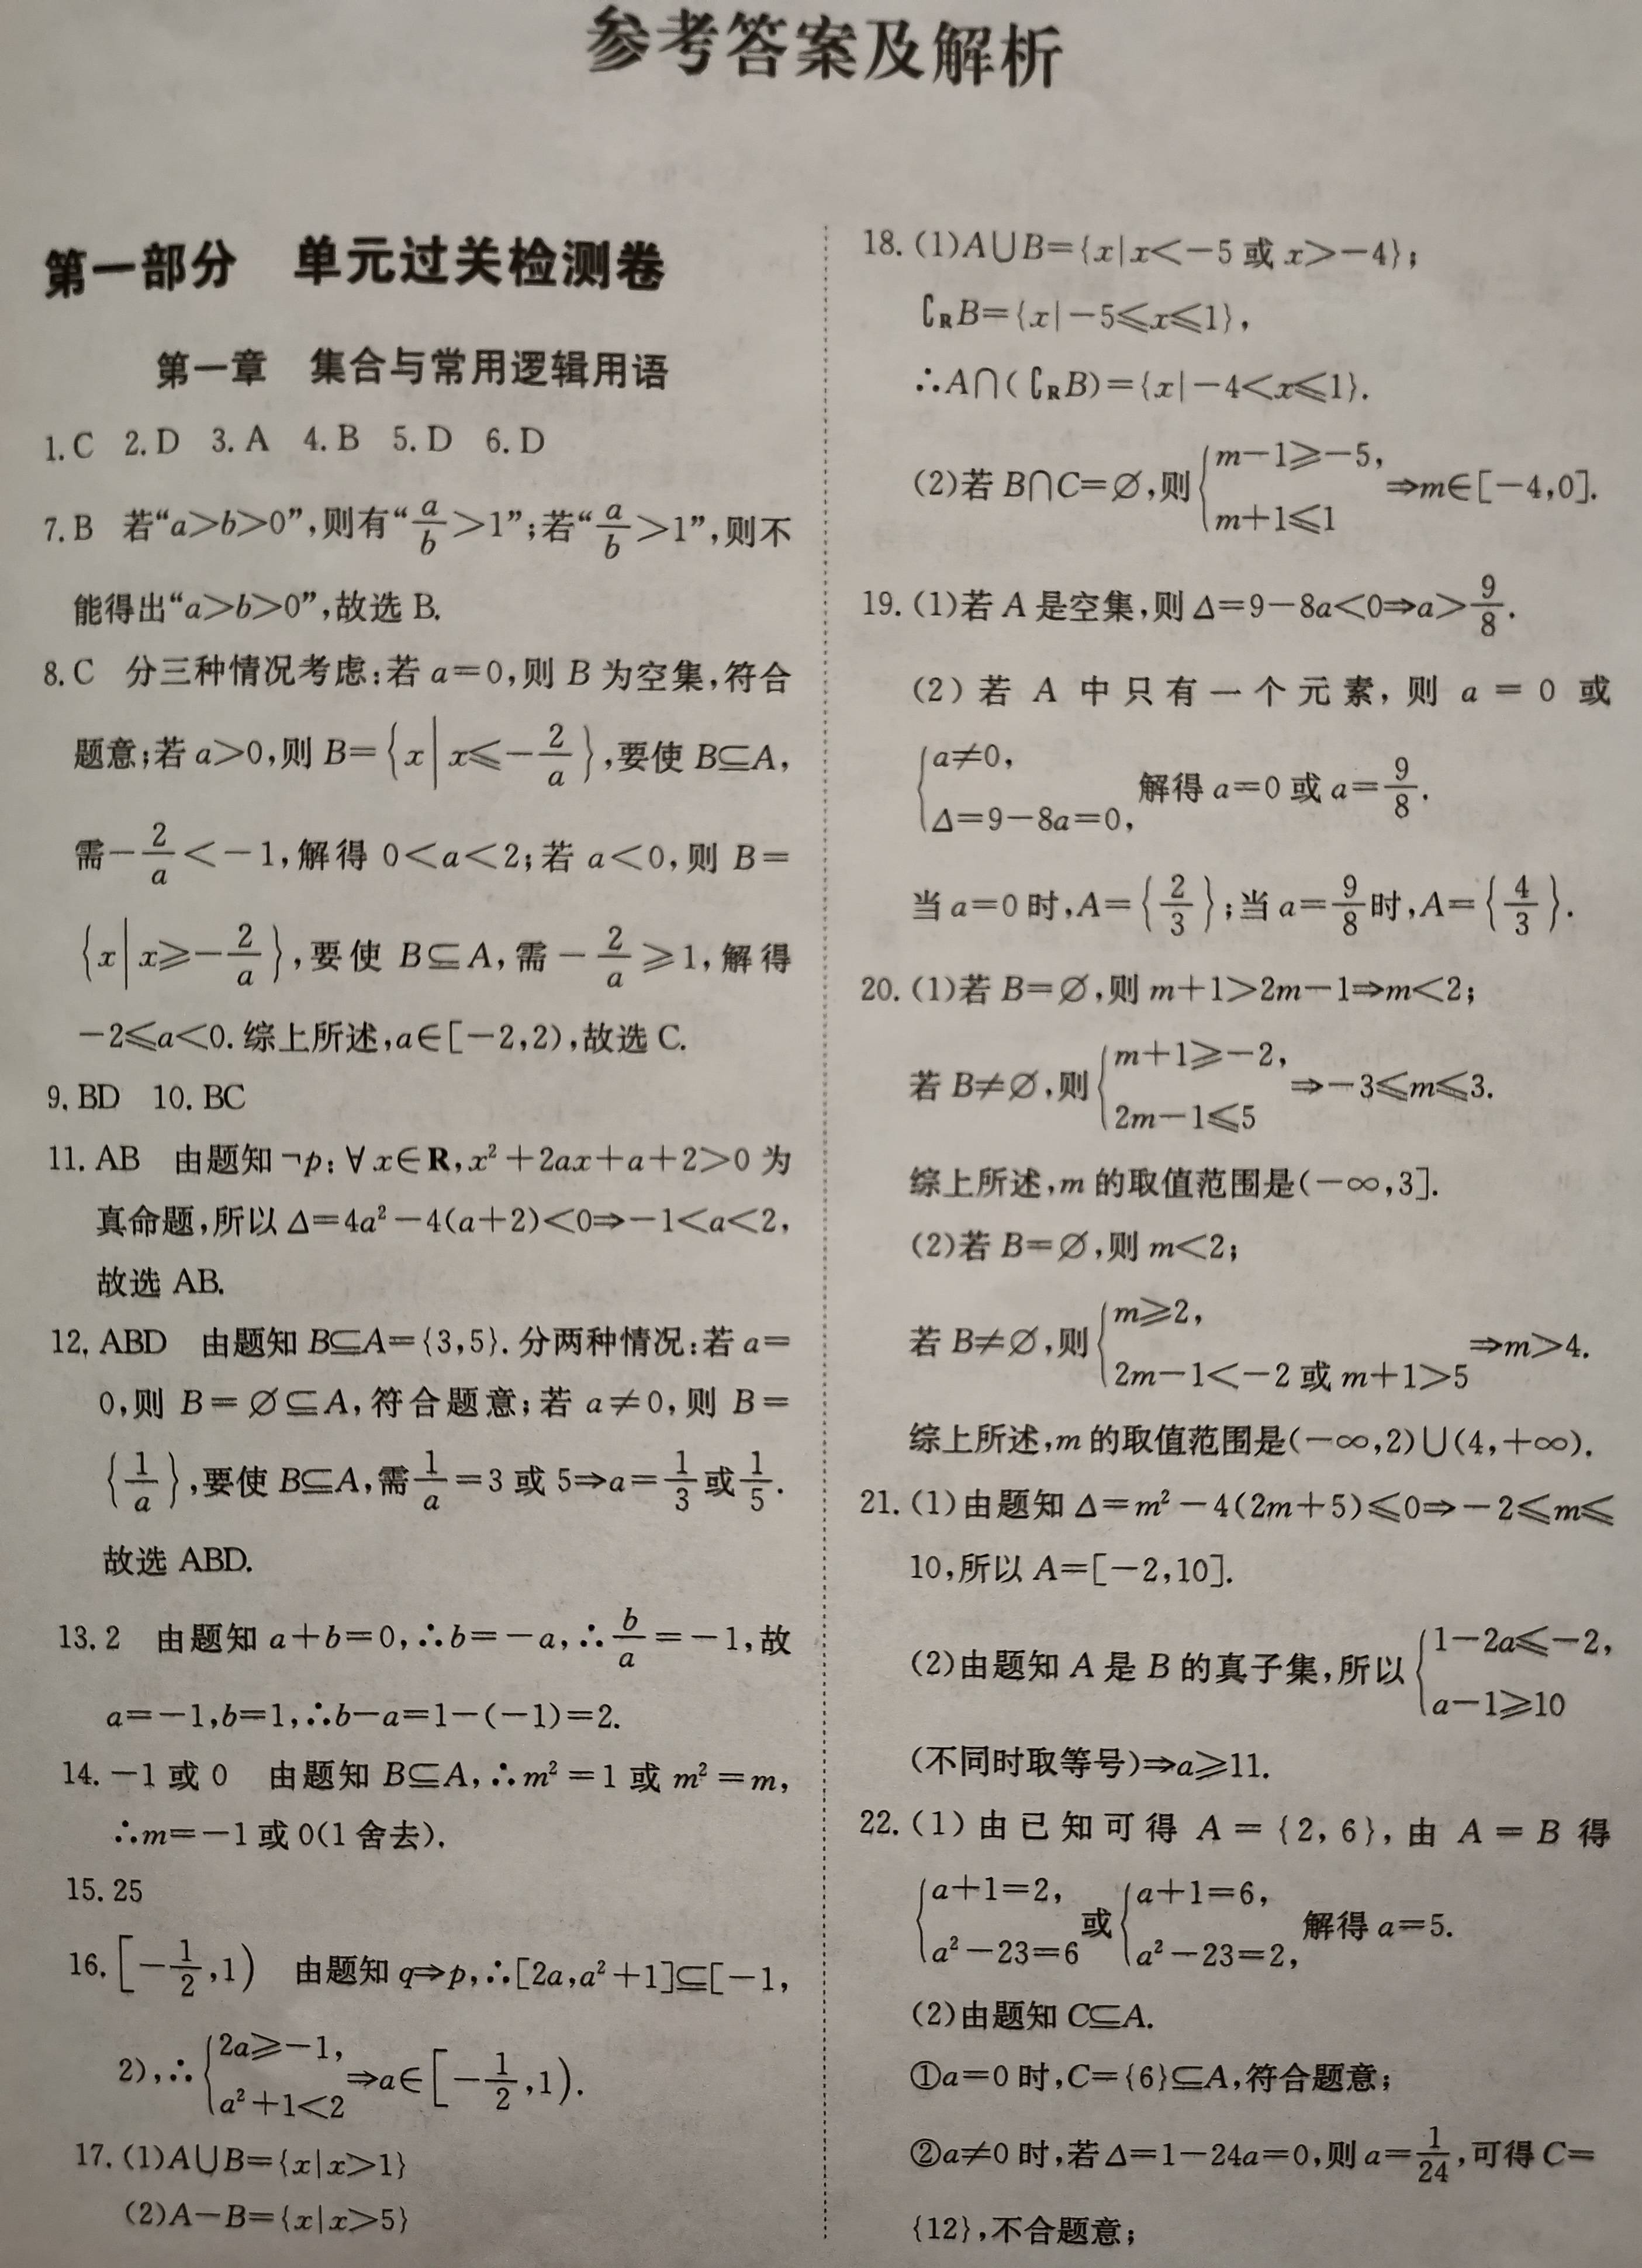 我的教育教学策划1171：国庆假数学作业的参考答案【2022.10.1.】